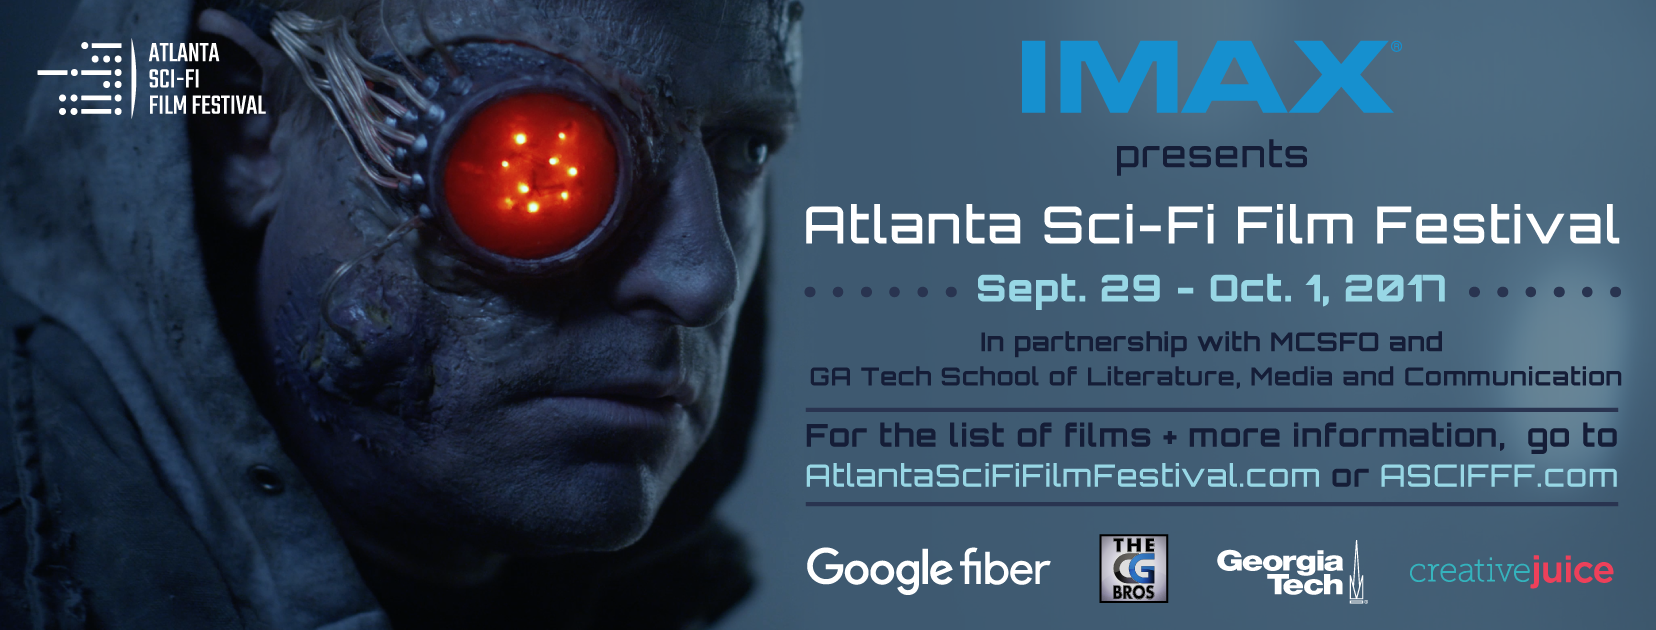 Atlanta Sci-Fi Film Festival 2017